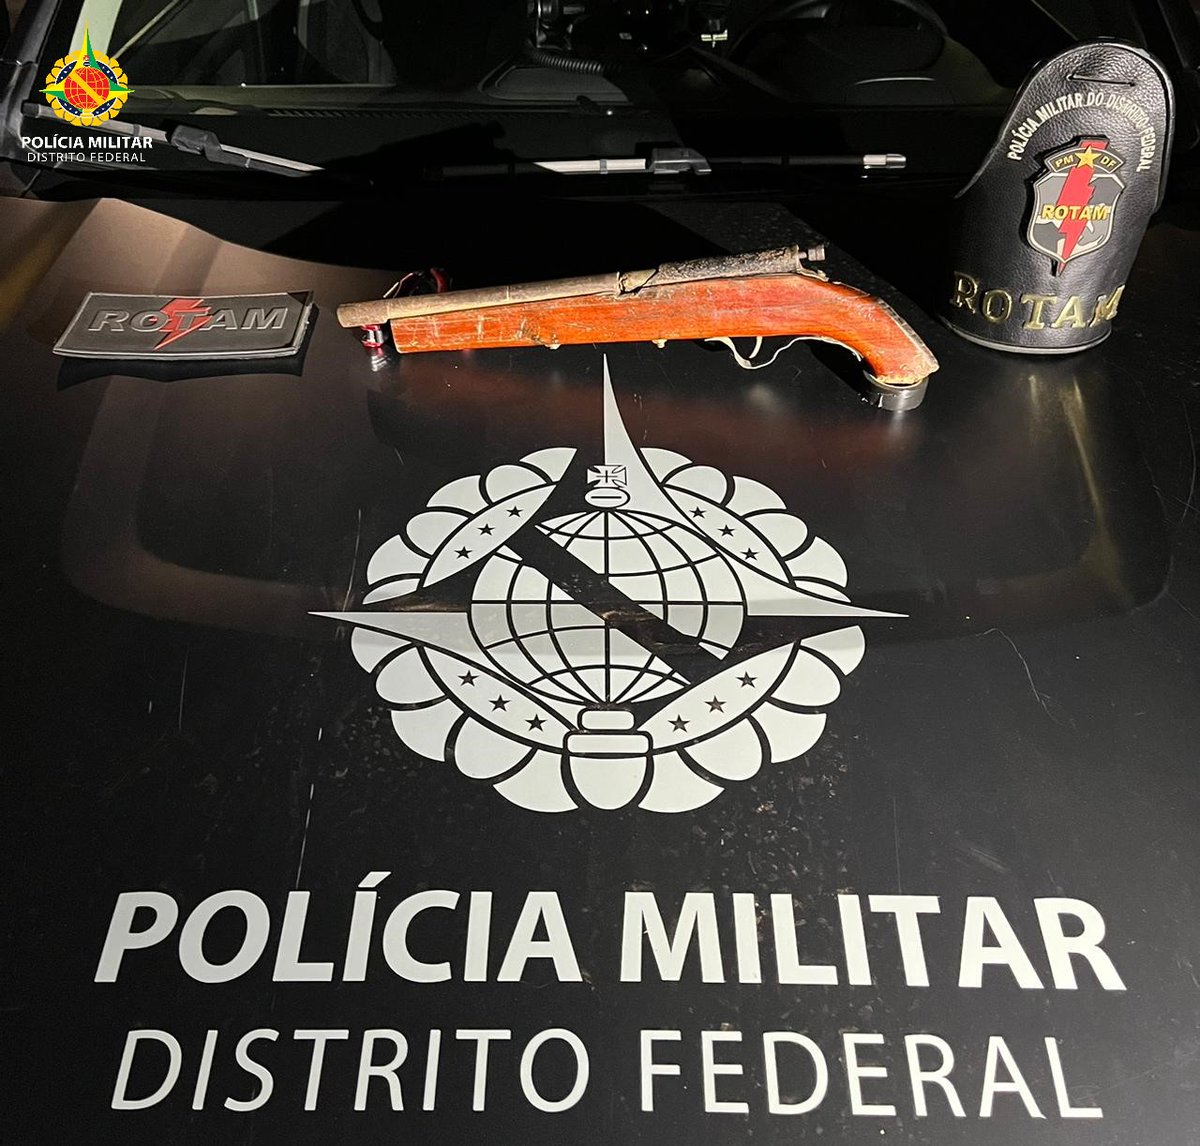 Polícia Militar do Distrito Federal - PMDF no combate ao crime em Samambaia pmdf.df.gov.br/index.php/ocor… via @pmdfoficial